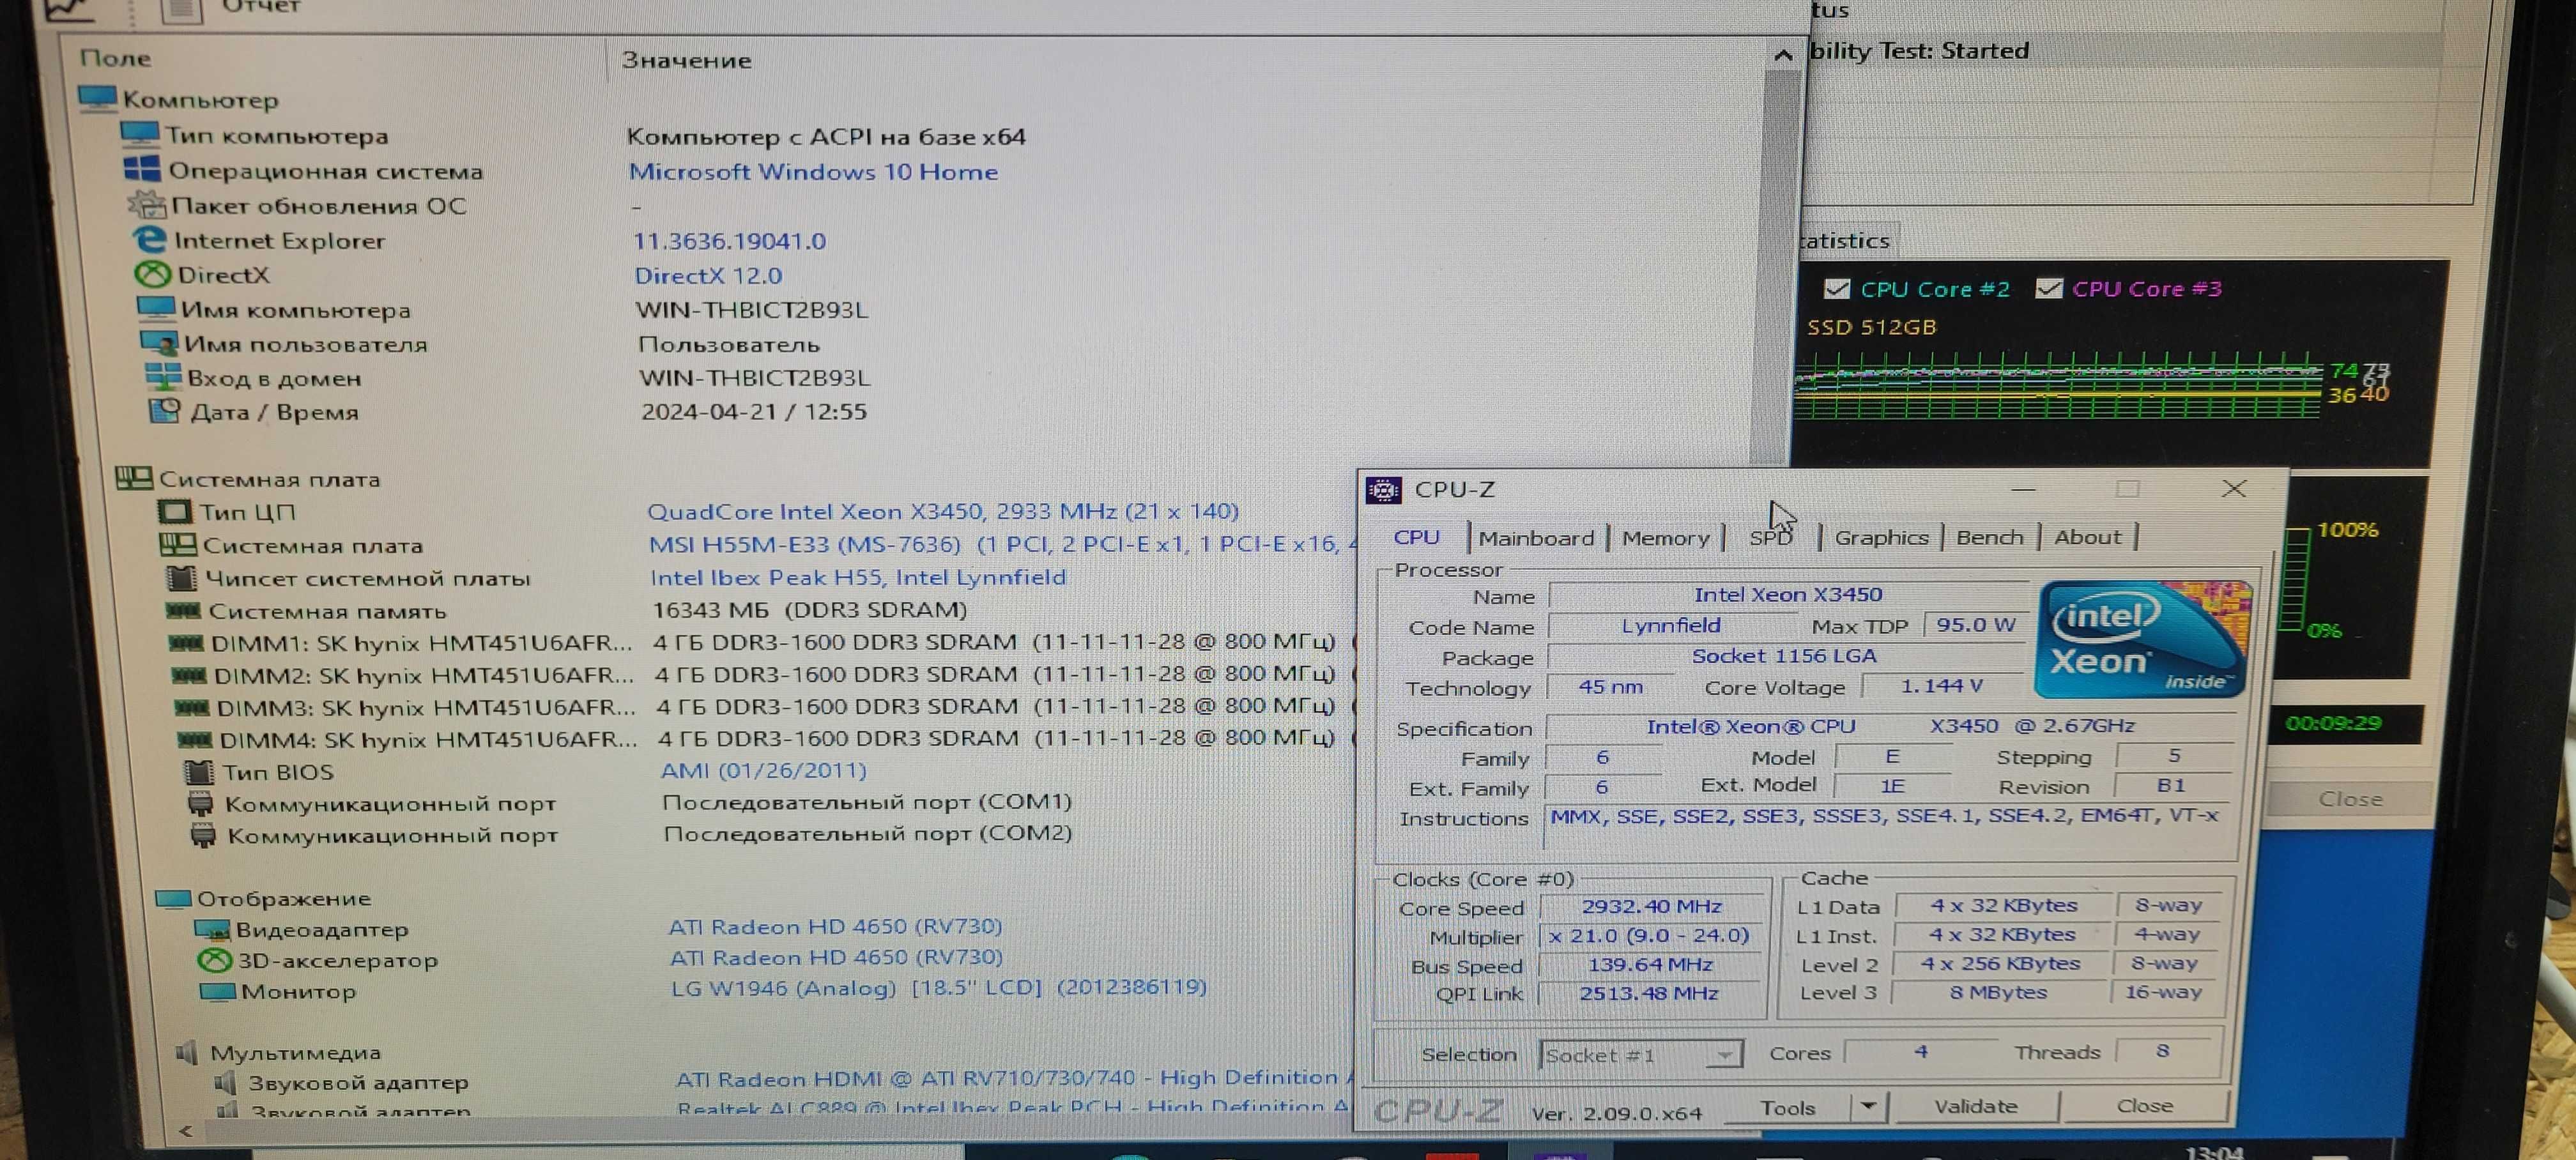 Комлет 4 ядра 8 потоков I7 +MSI H55 + 16GB DDR3 + LED БАШНЯ Xeon x3450